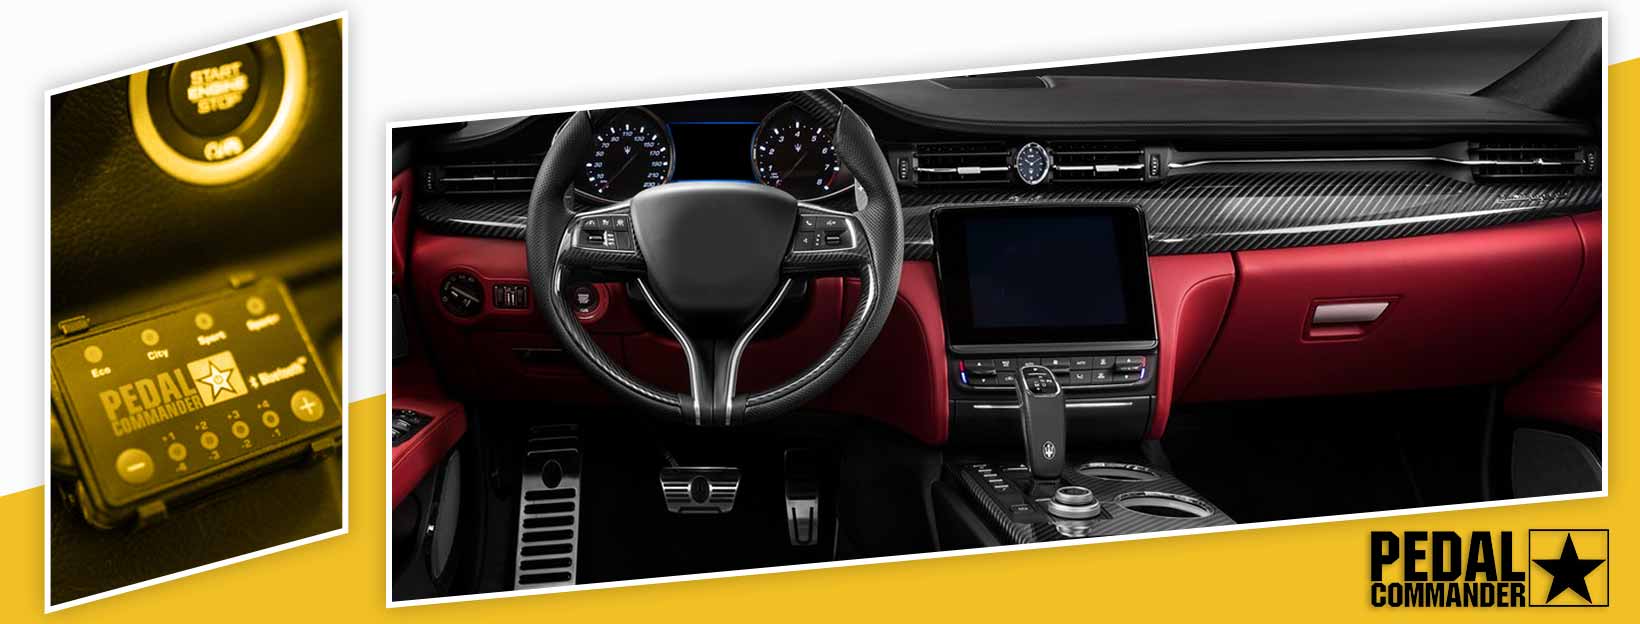 Pedal Commander for Maserati Quattroporte - interior